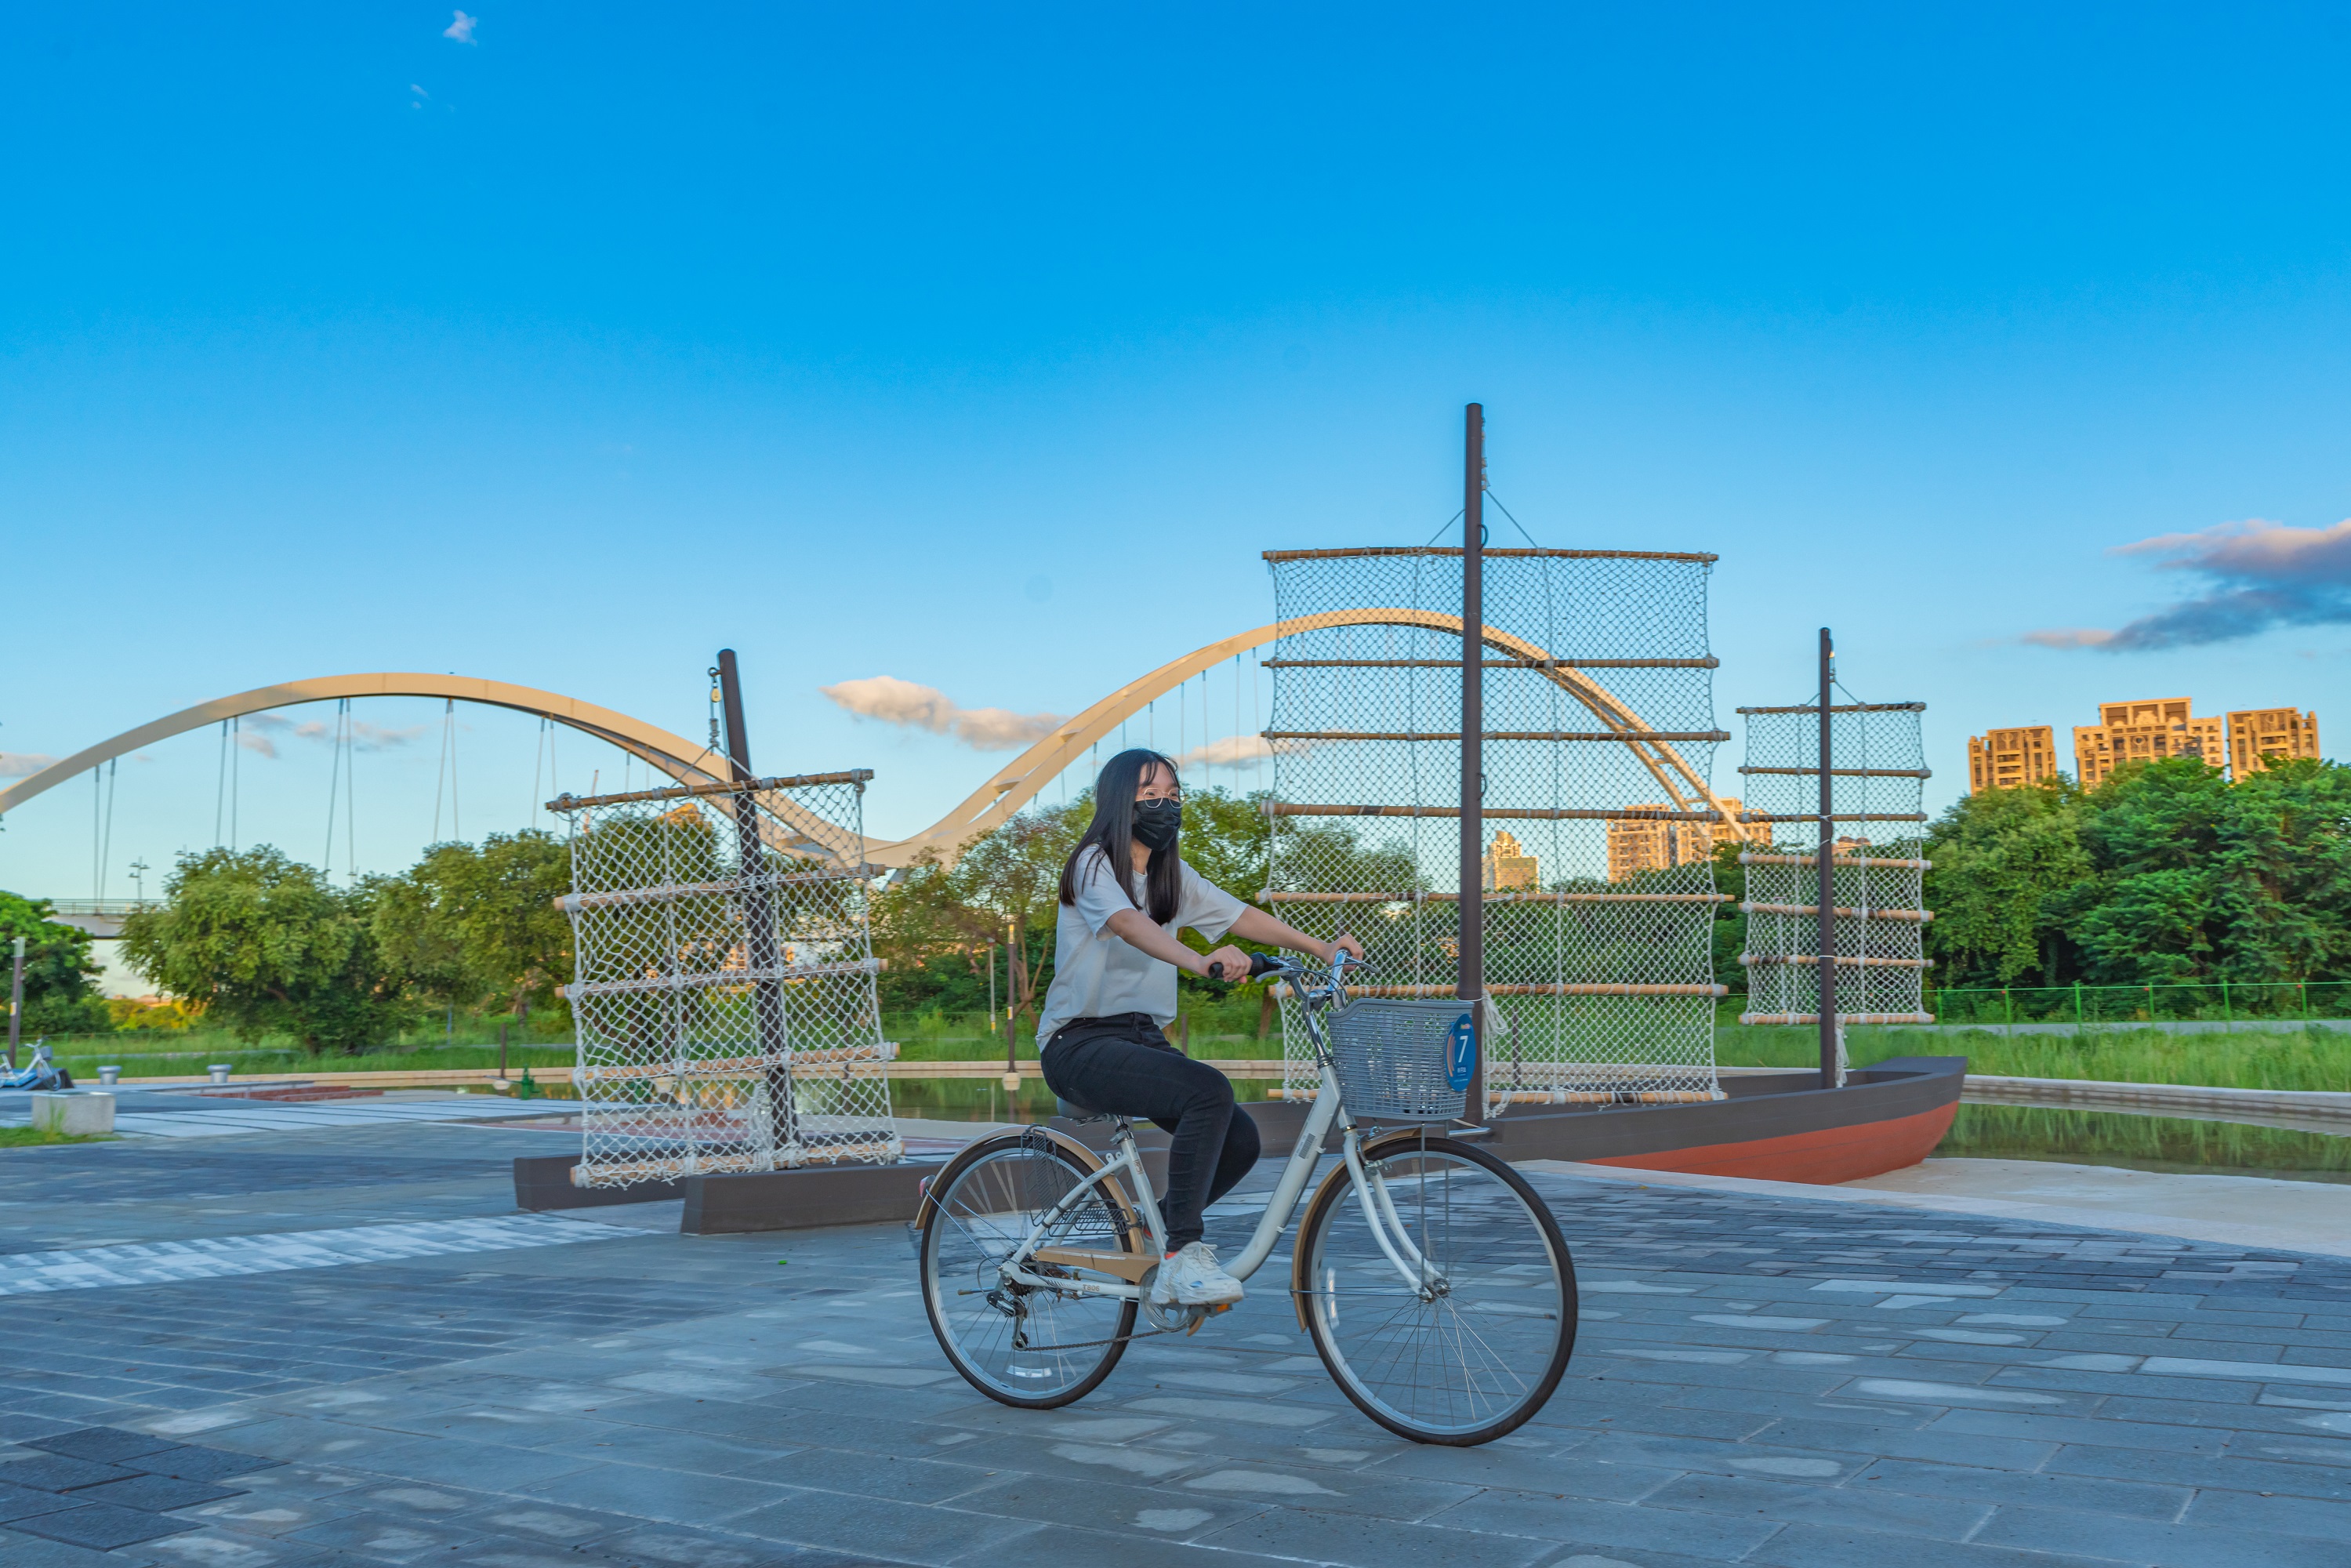 新月廣場是騎自行車民眾的水岸休憩空間